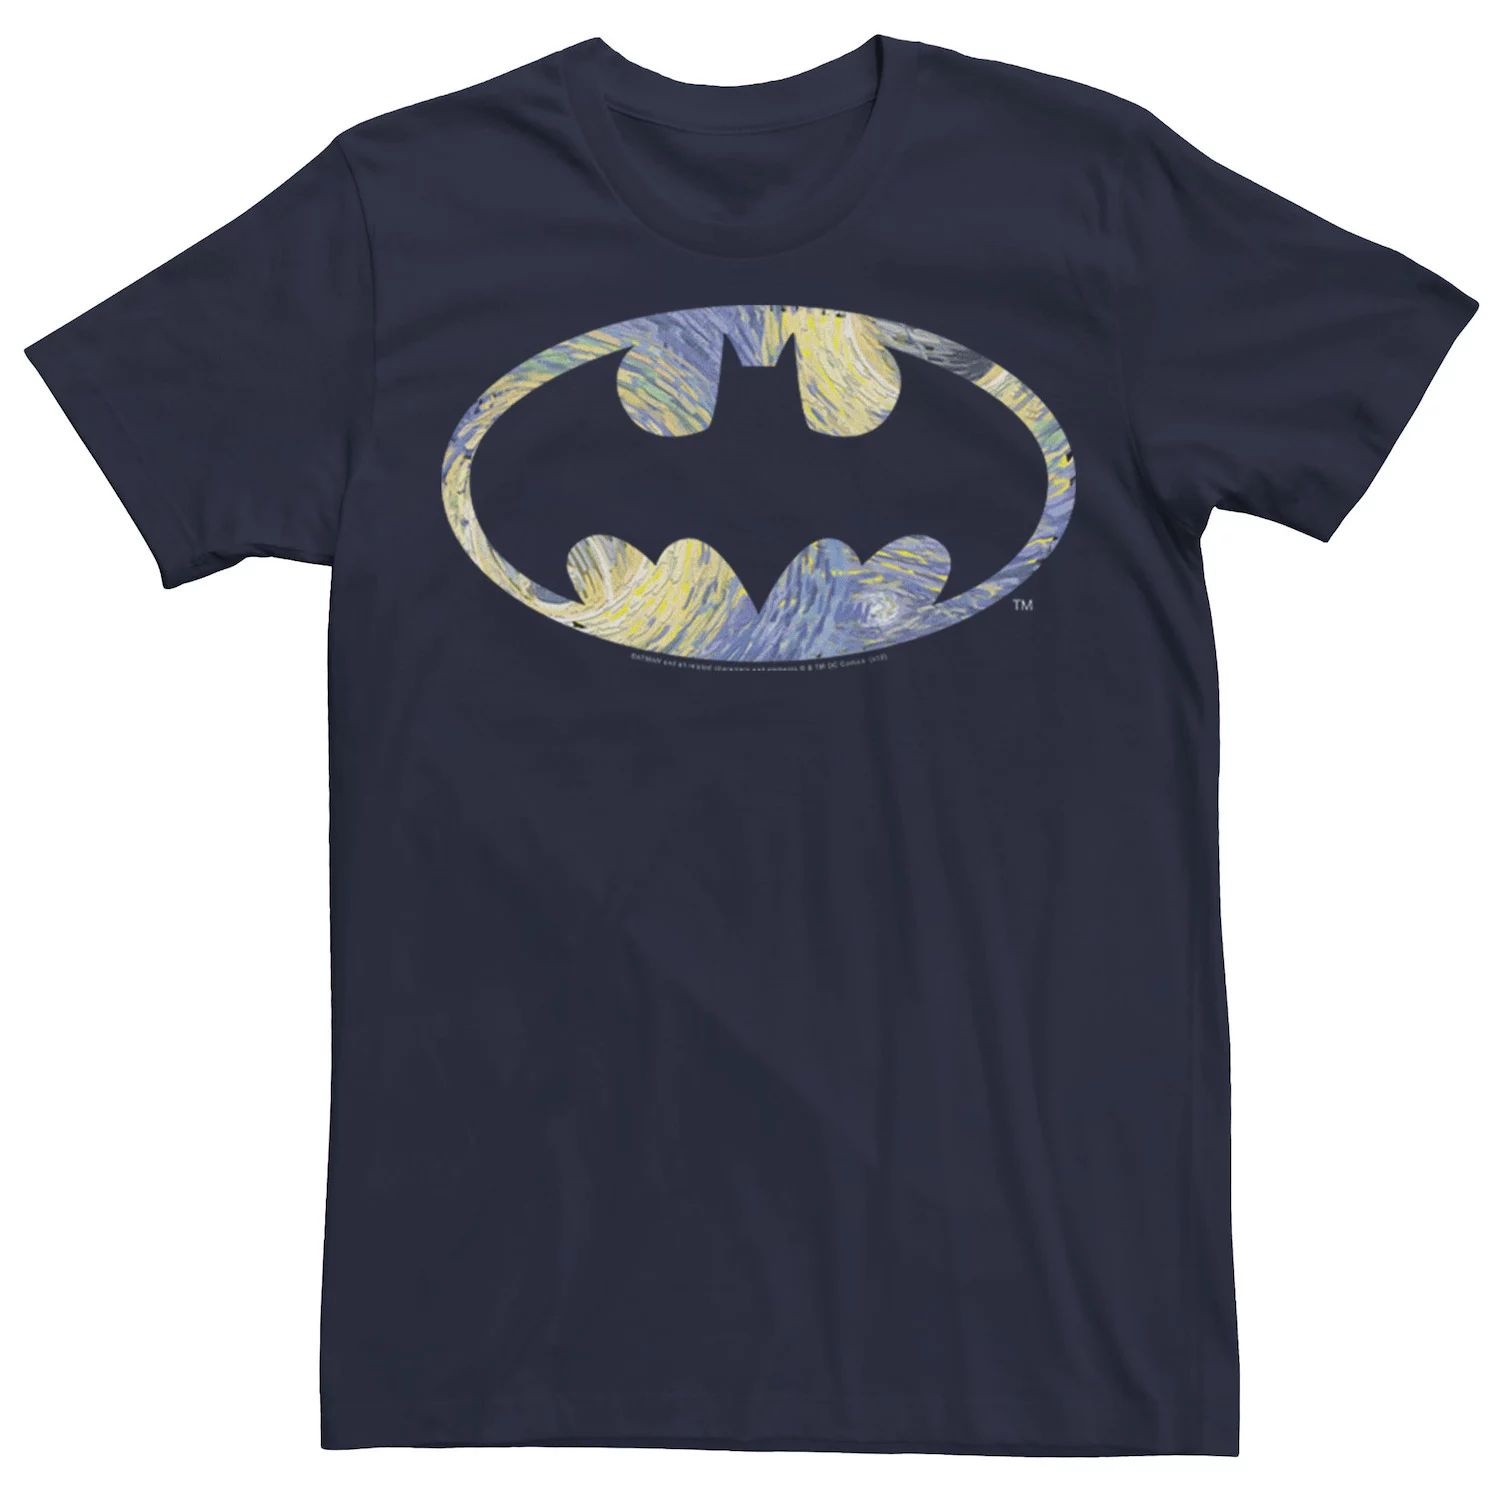 Мужская футболка с логотипом Batman Starry Night, Синяя DC Comics, синий